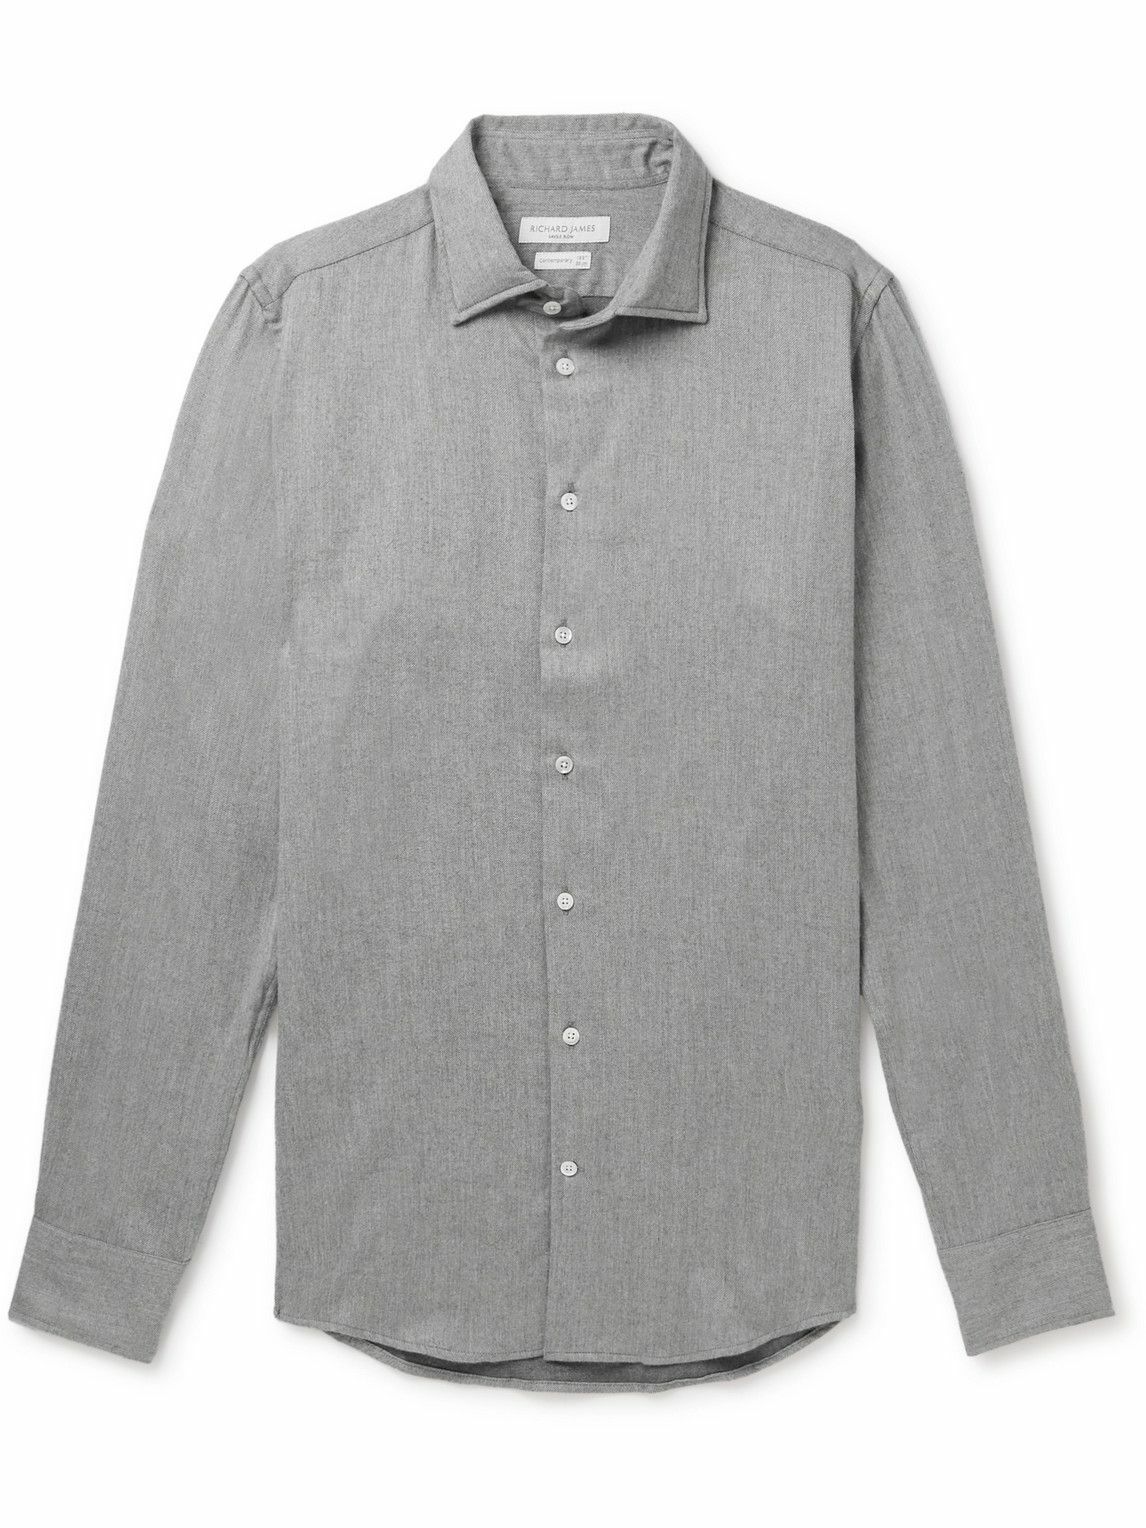 Richard James - Cotton-Flannel Shirt - Gray Richard James